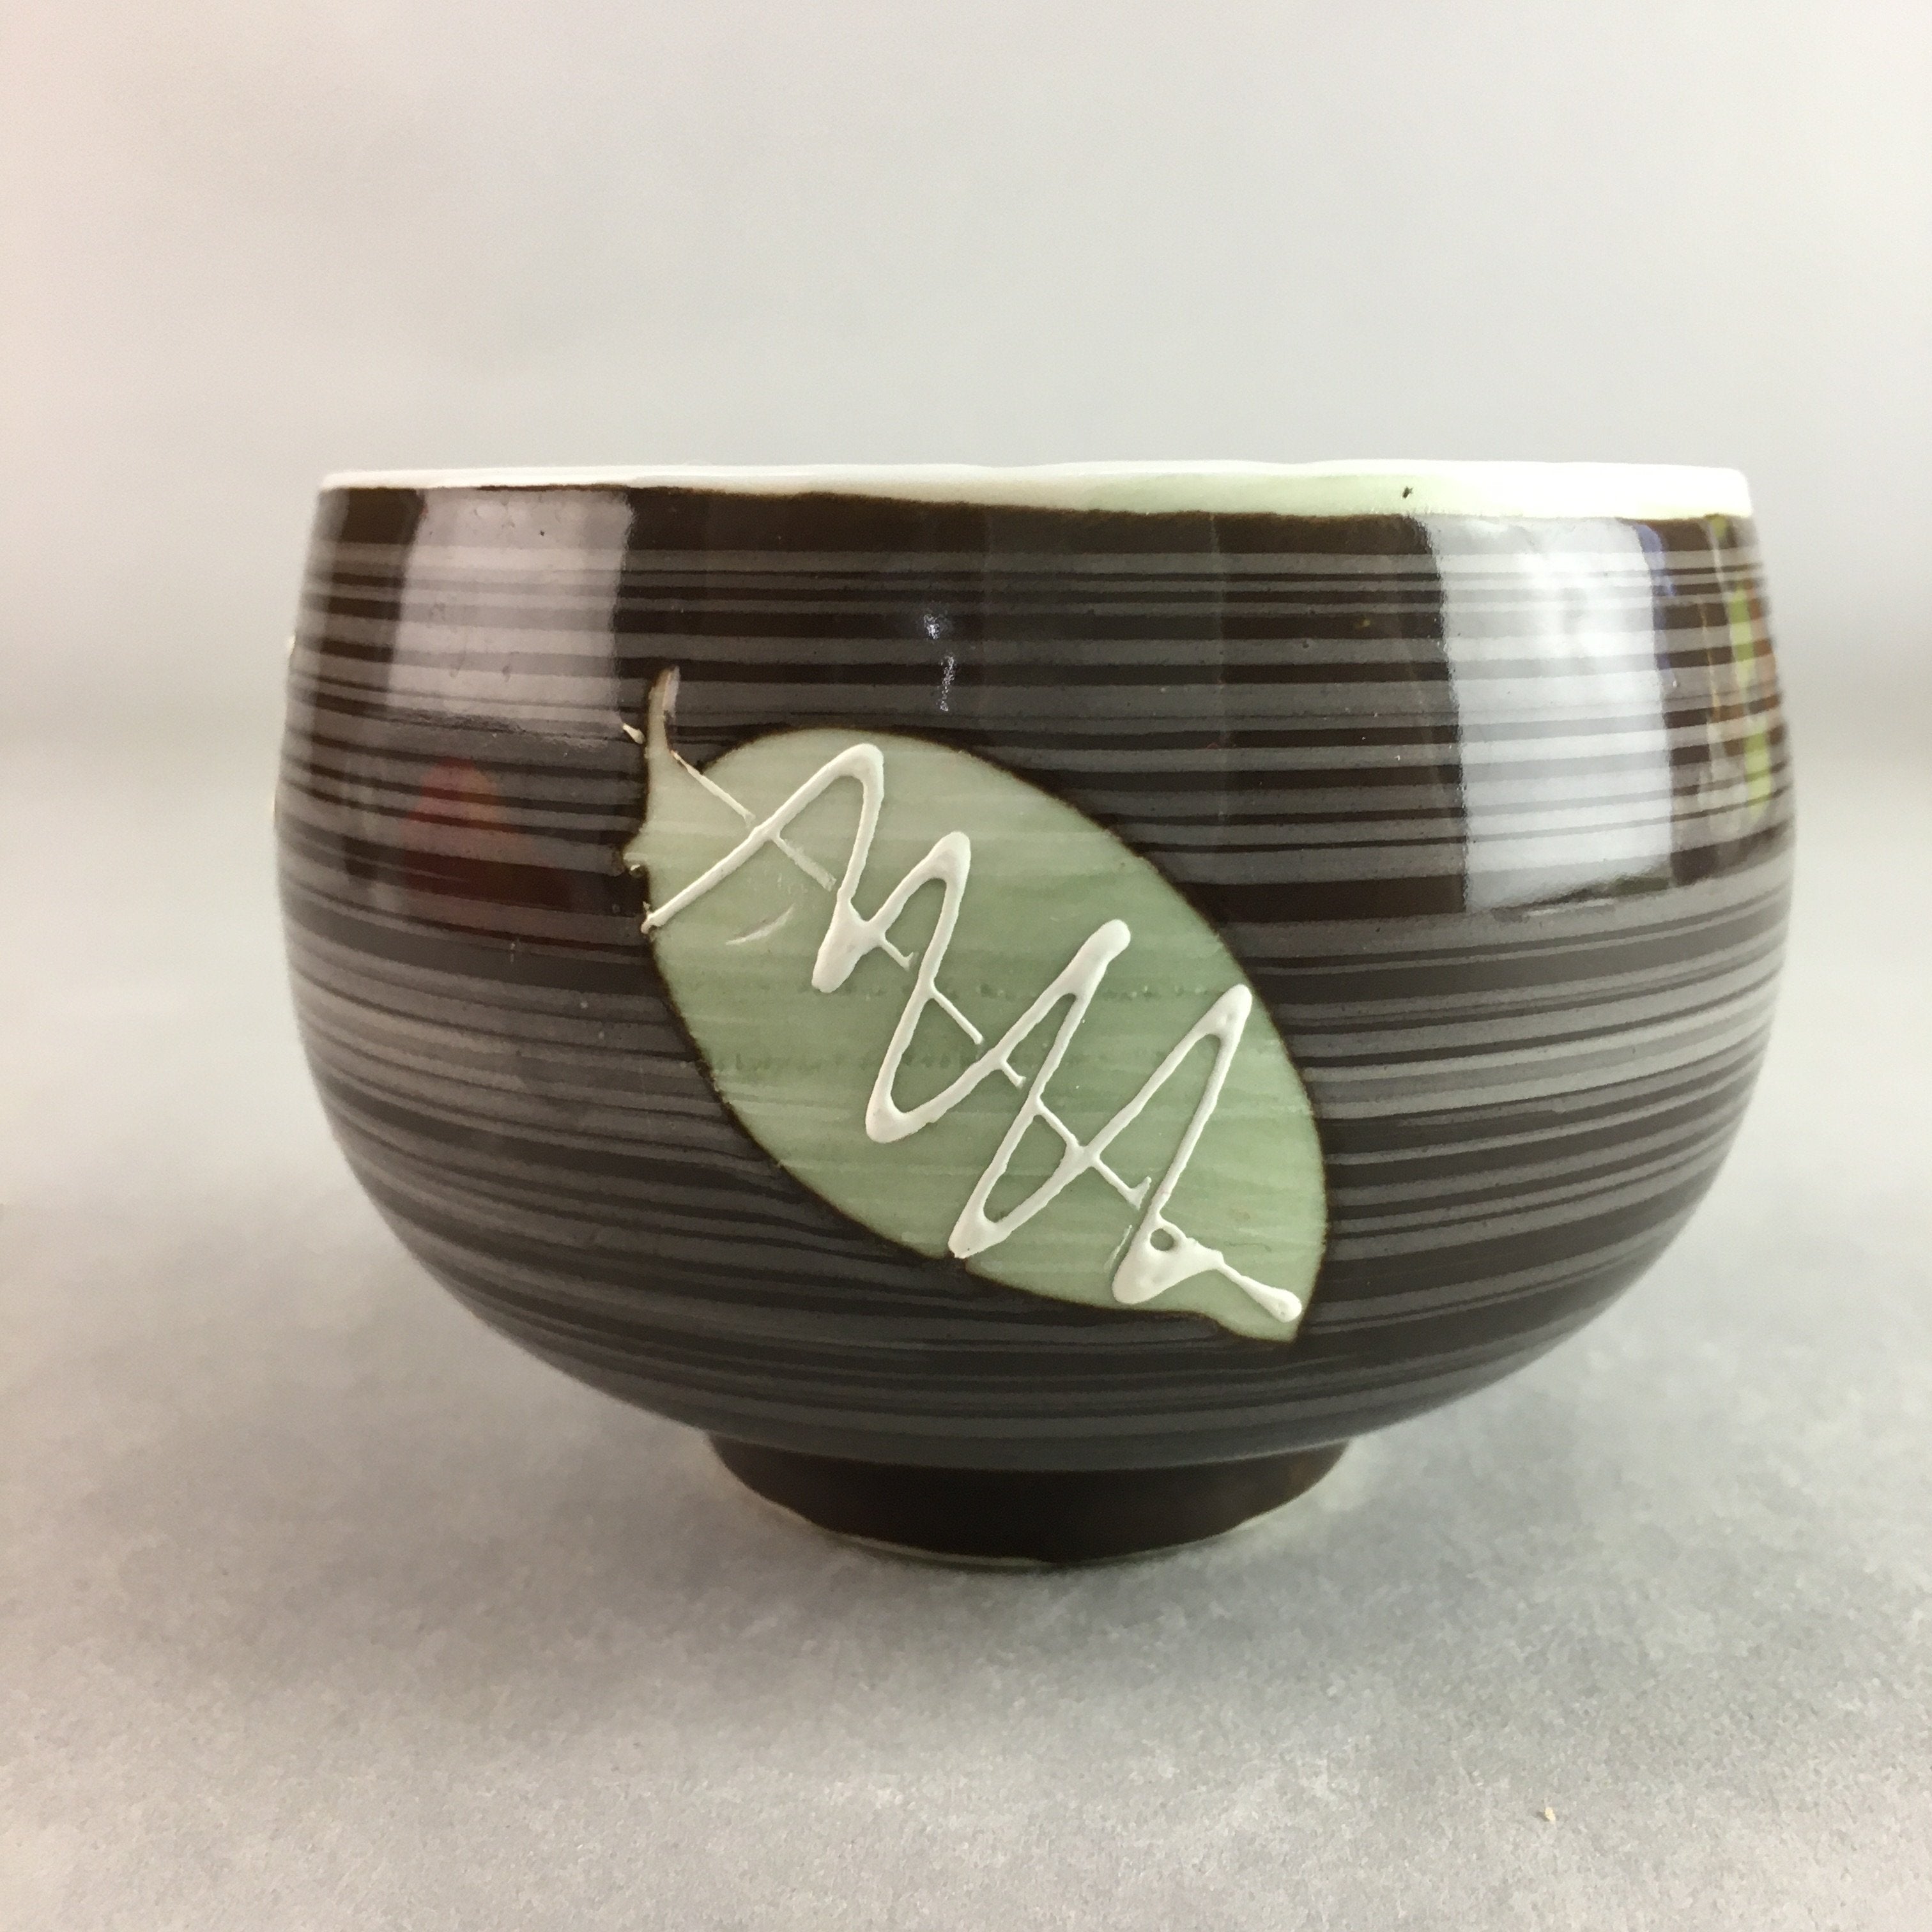 Japanese Porcelain Teacup Yunomi Vtg Sencha Brown Green Leaf Stripe TC138